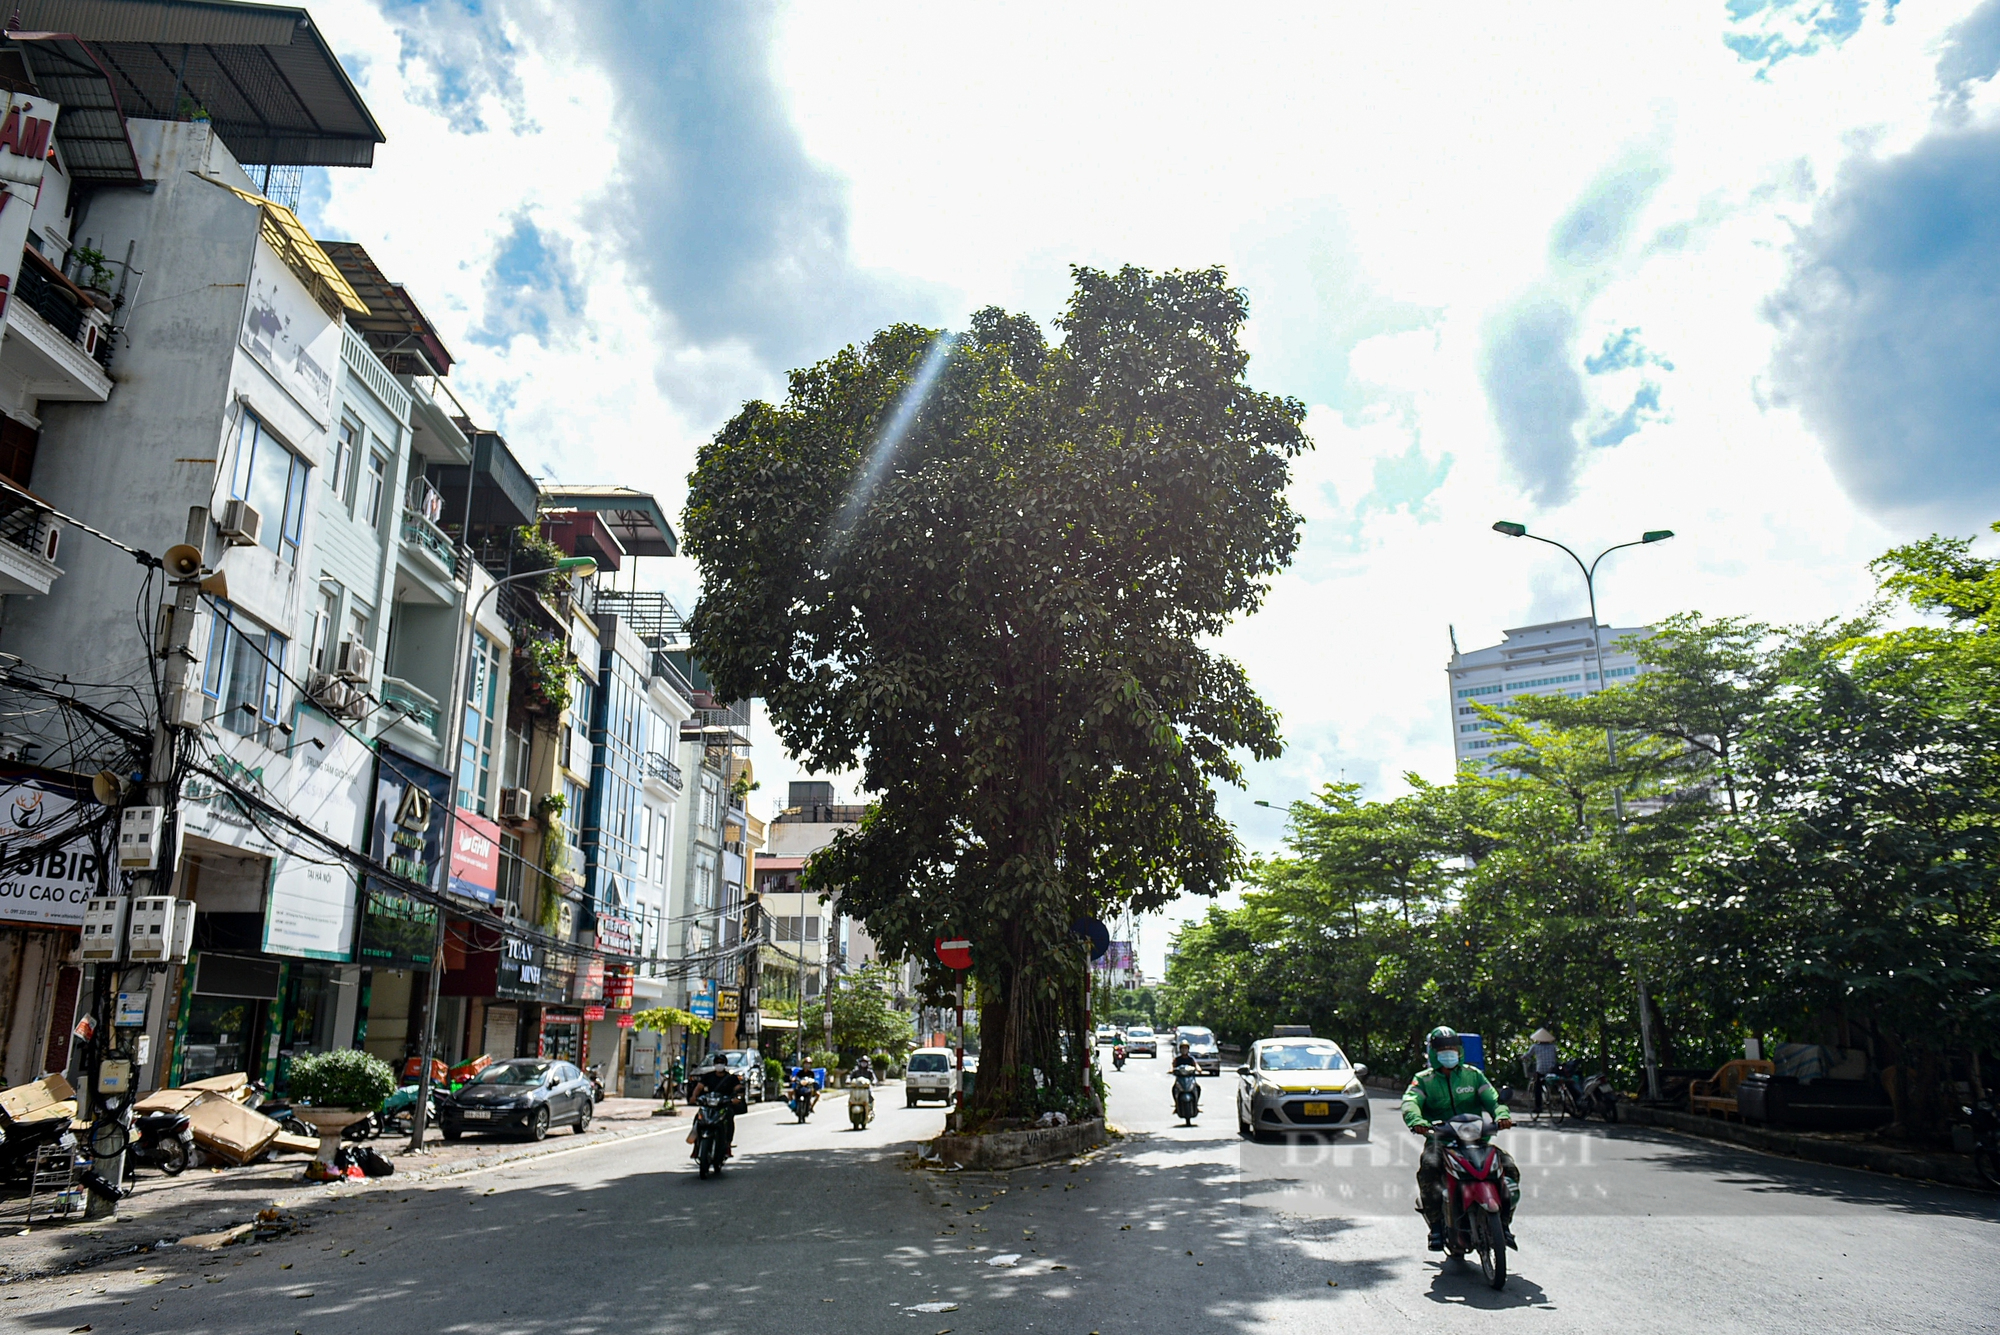 Điểm danh những cây cổ thụ mọc giữa đường lớn ở Hà Nội - Ảnh 10.